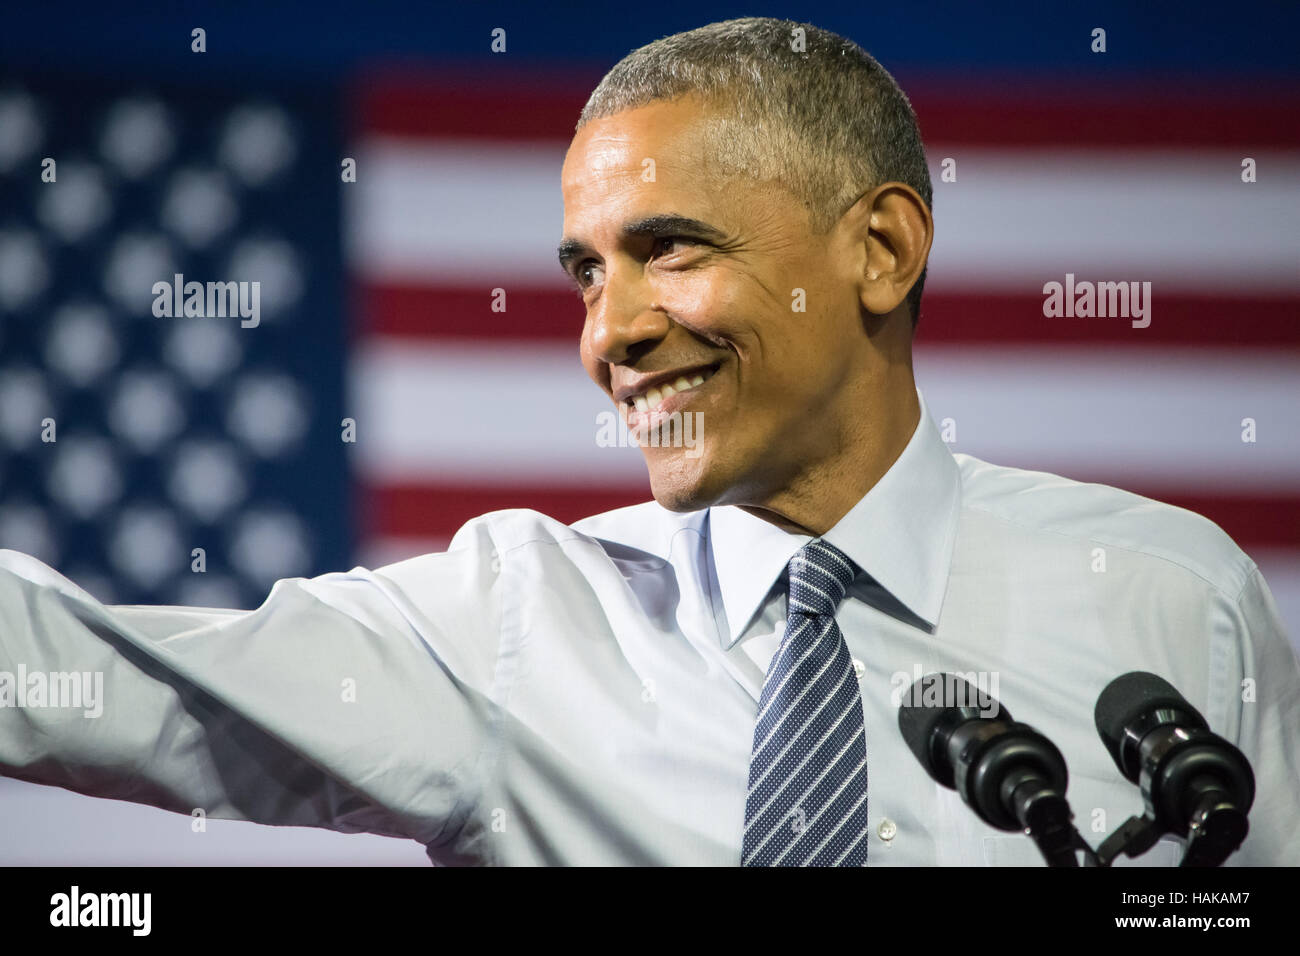 Barack Obama, Präsident der Vereinigten Staaten. Lächelnd mit seinem rechten Arm in Richtung der Masse erweitert. Stockfoto